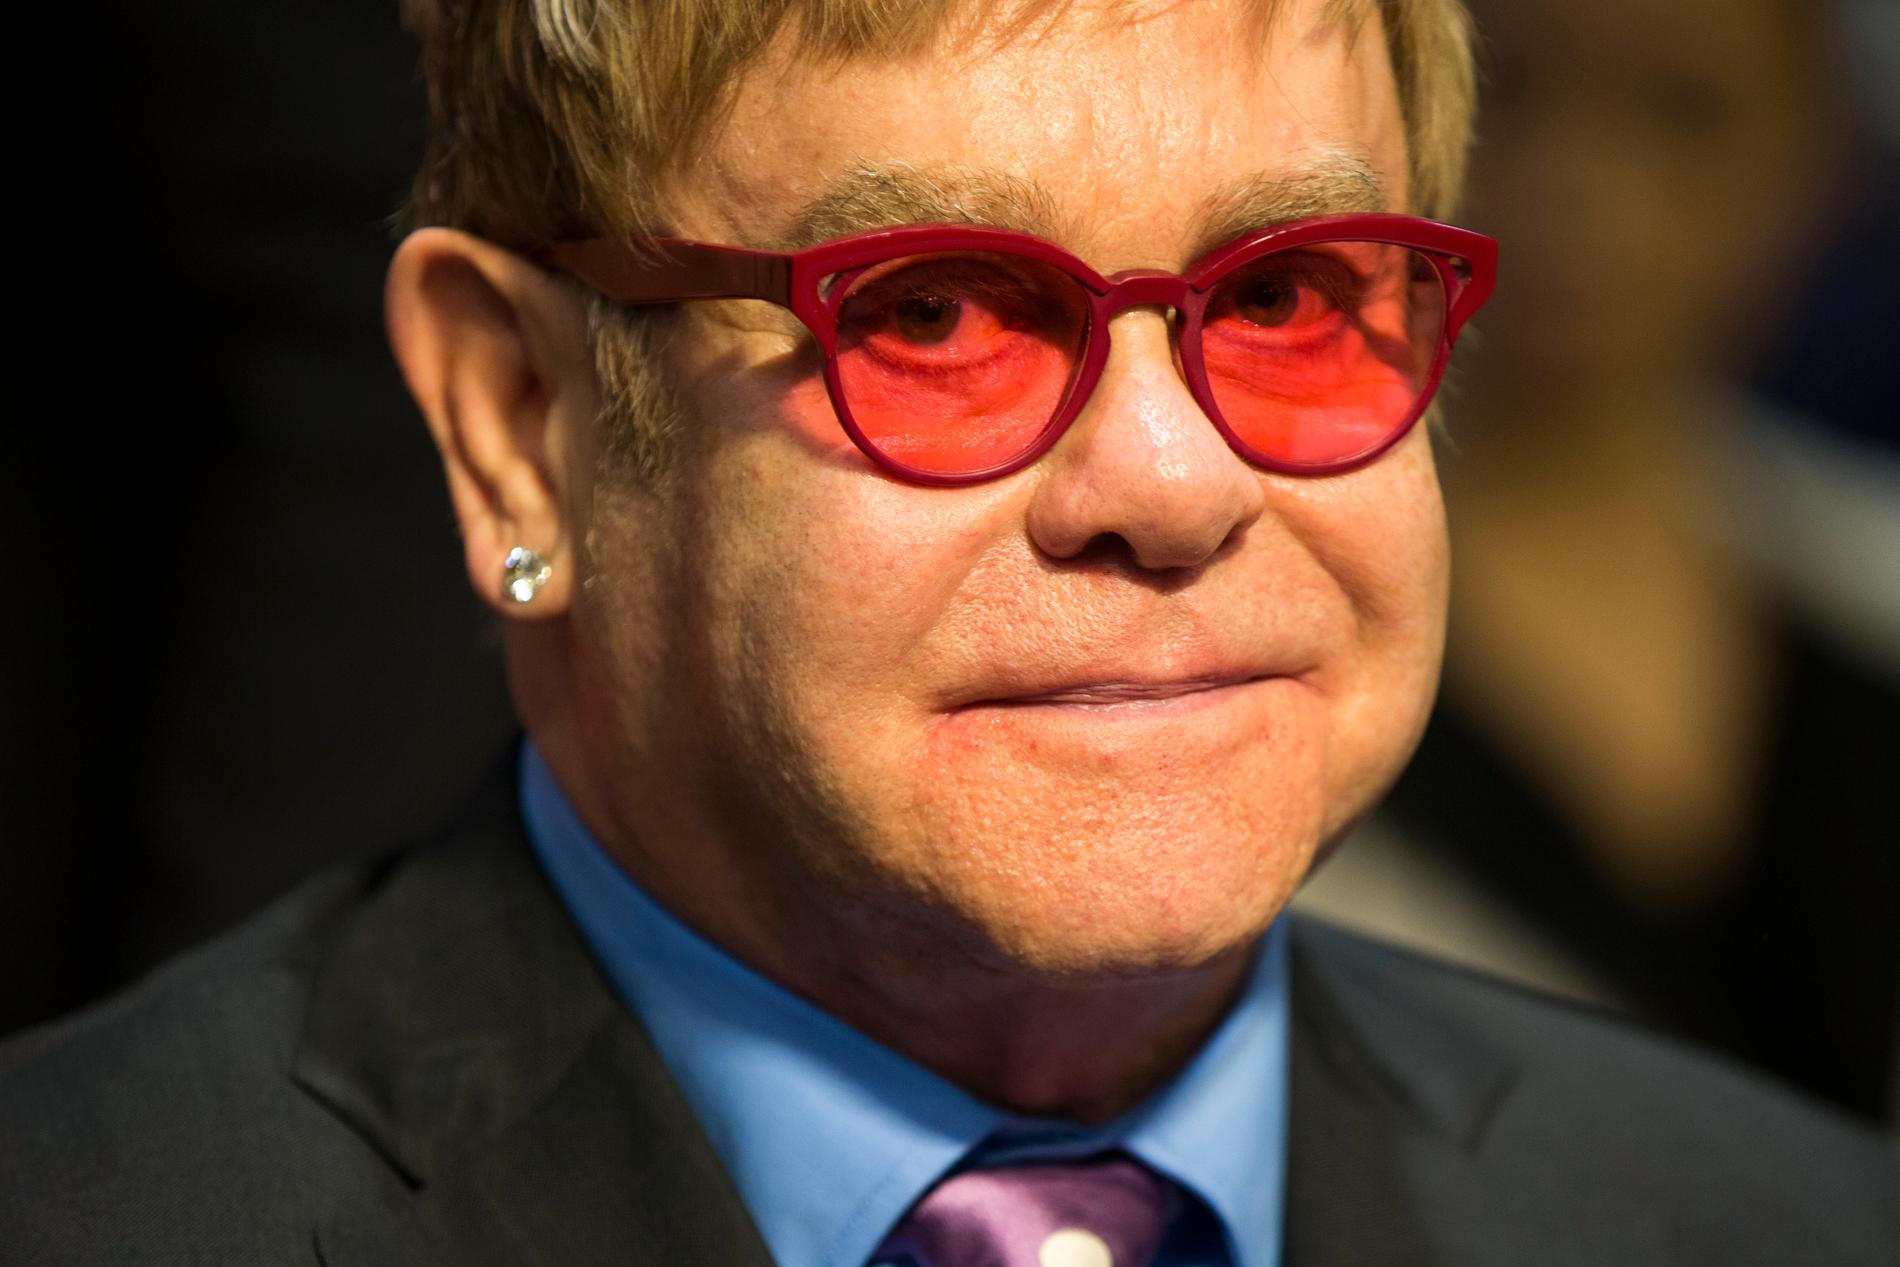 Elton John framförde låten ”Never too late” på det nya albumet. Han var också med och skrev låten ”Spriit” som sjungs av Beyoncé i nya filmen. 